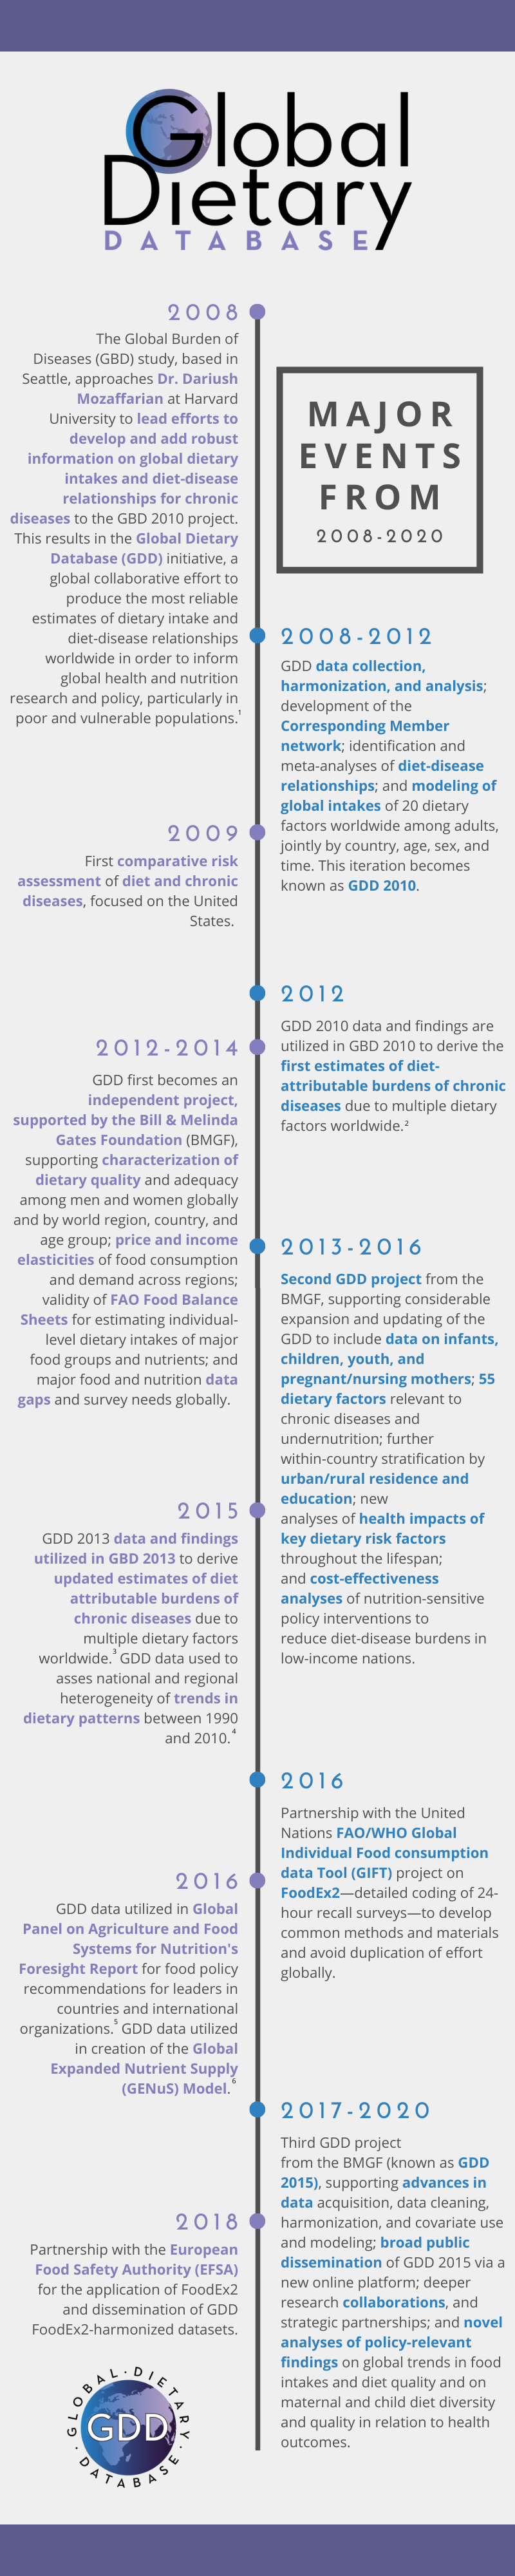 GDD timeline of major events, 2008-2020